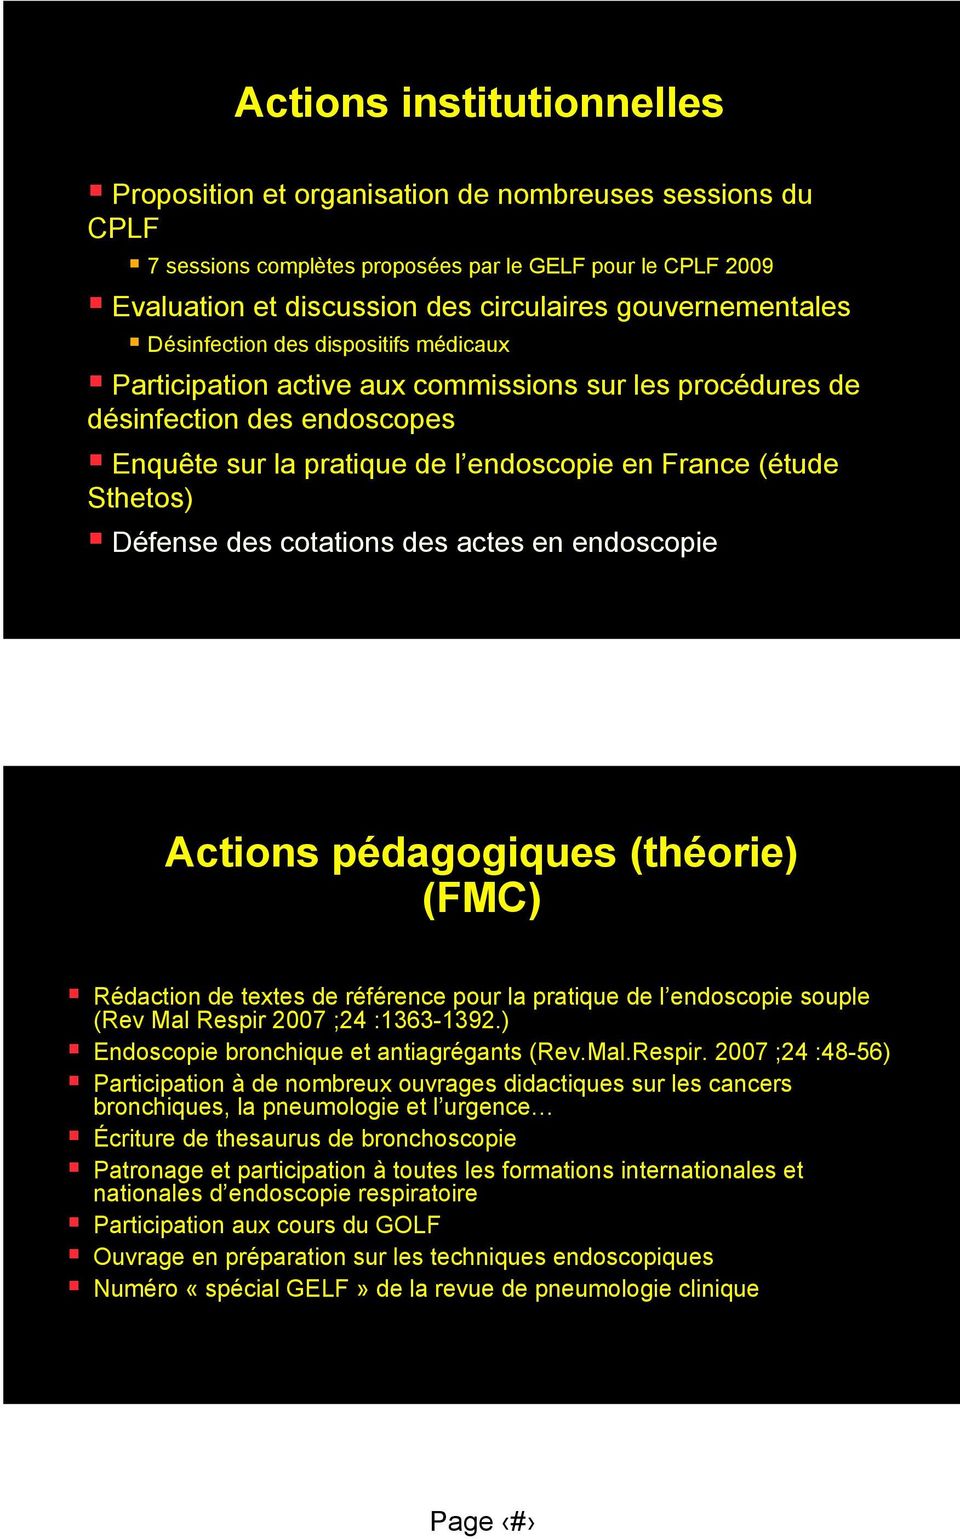 Sthetos) Défense des cotations des actes en endoscopie Actions pédagogiques (théorie) (FMC) Rédaction de textes de référence pour la pratique de l endoscopie souple (Rev Mal Respir 2007 ;24